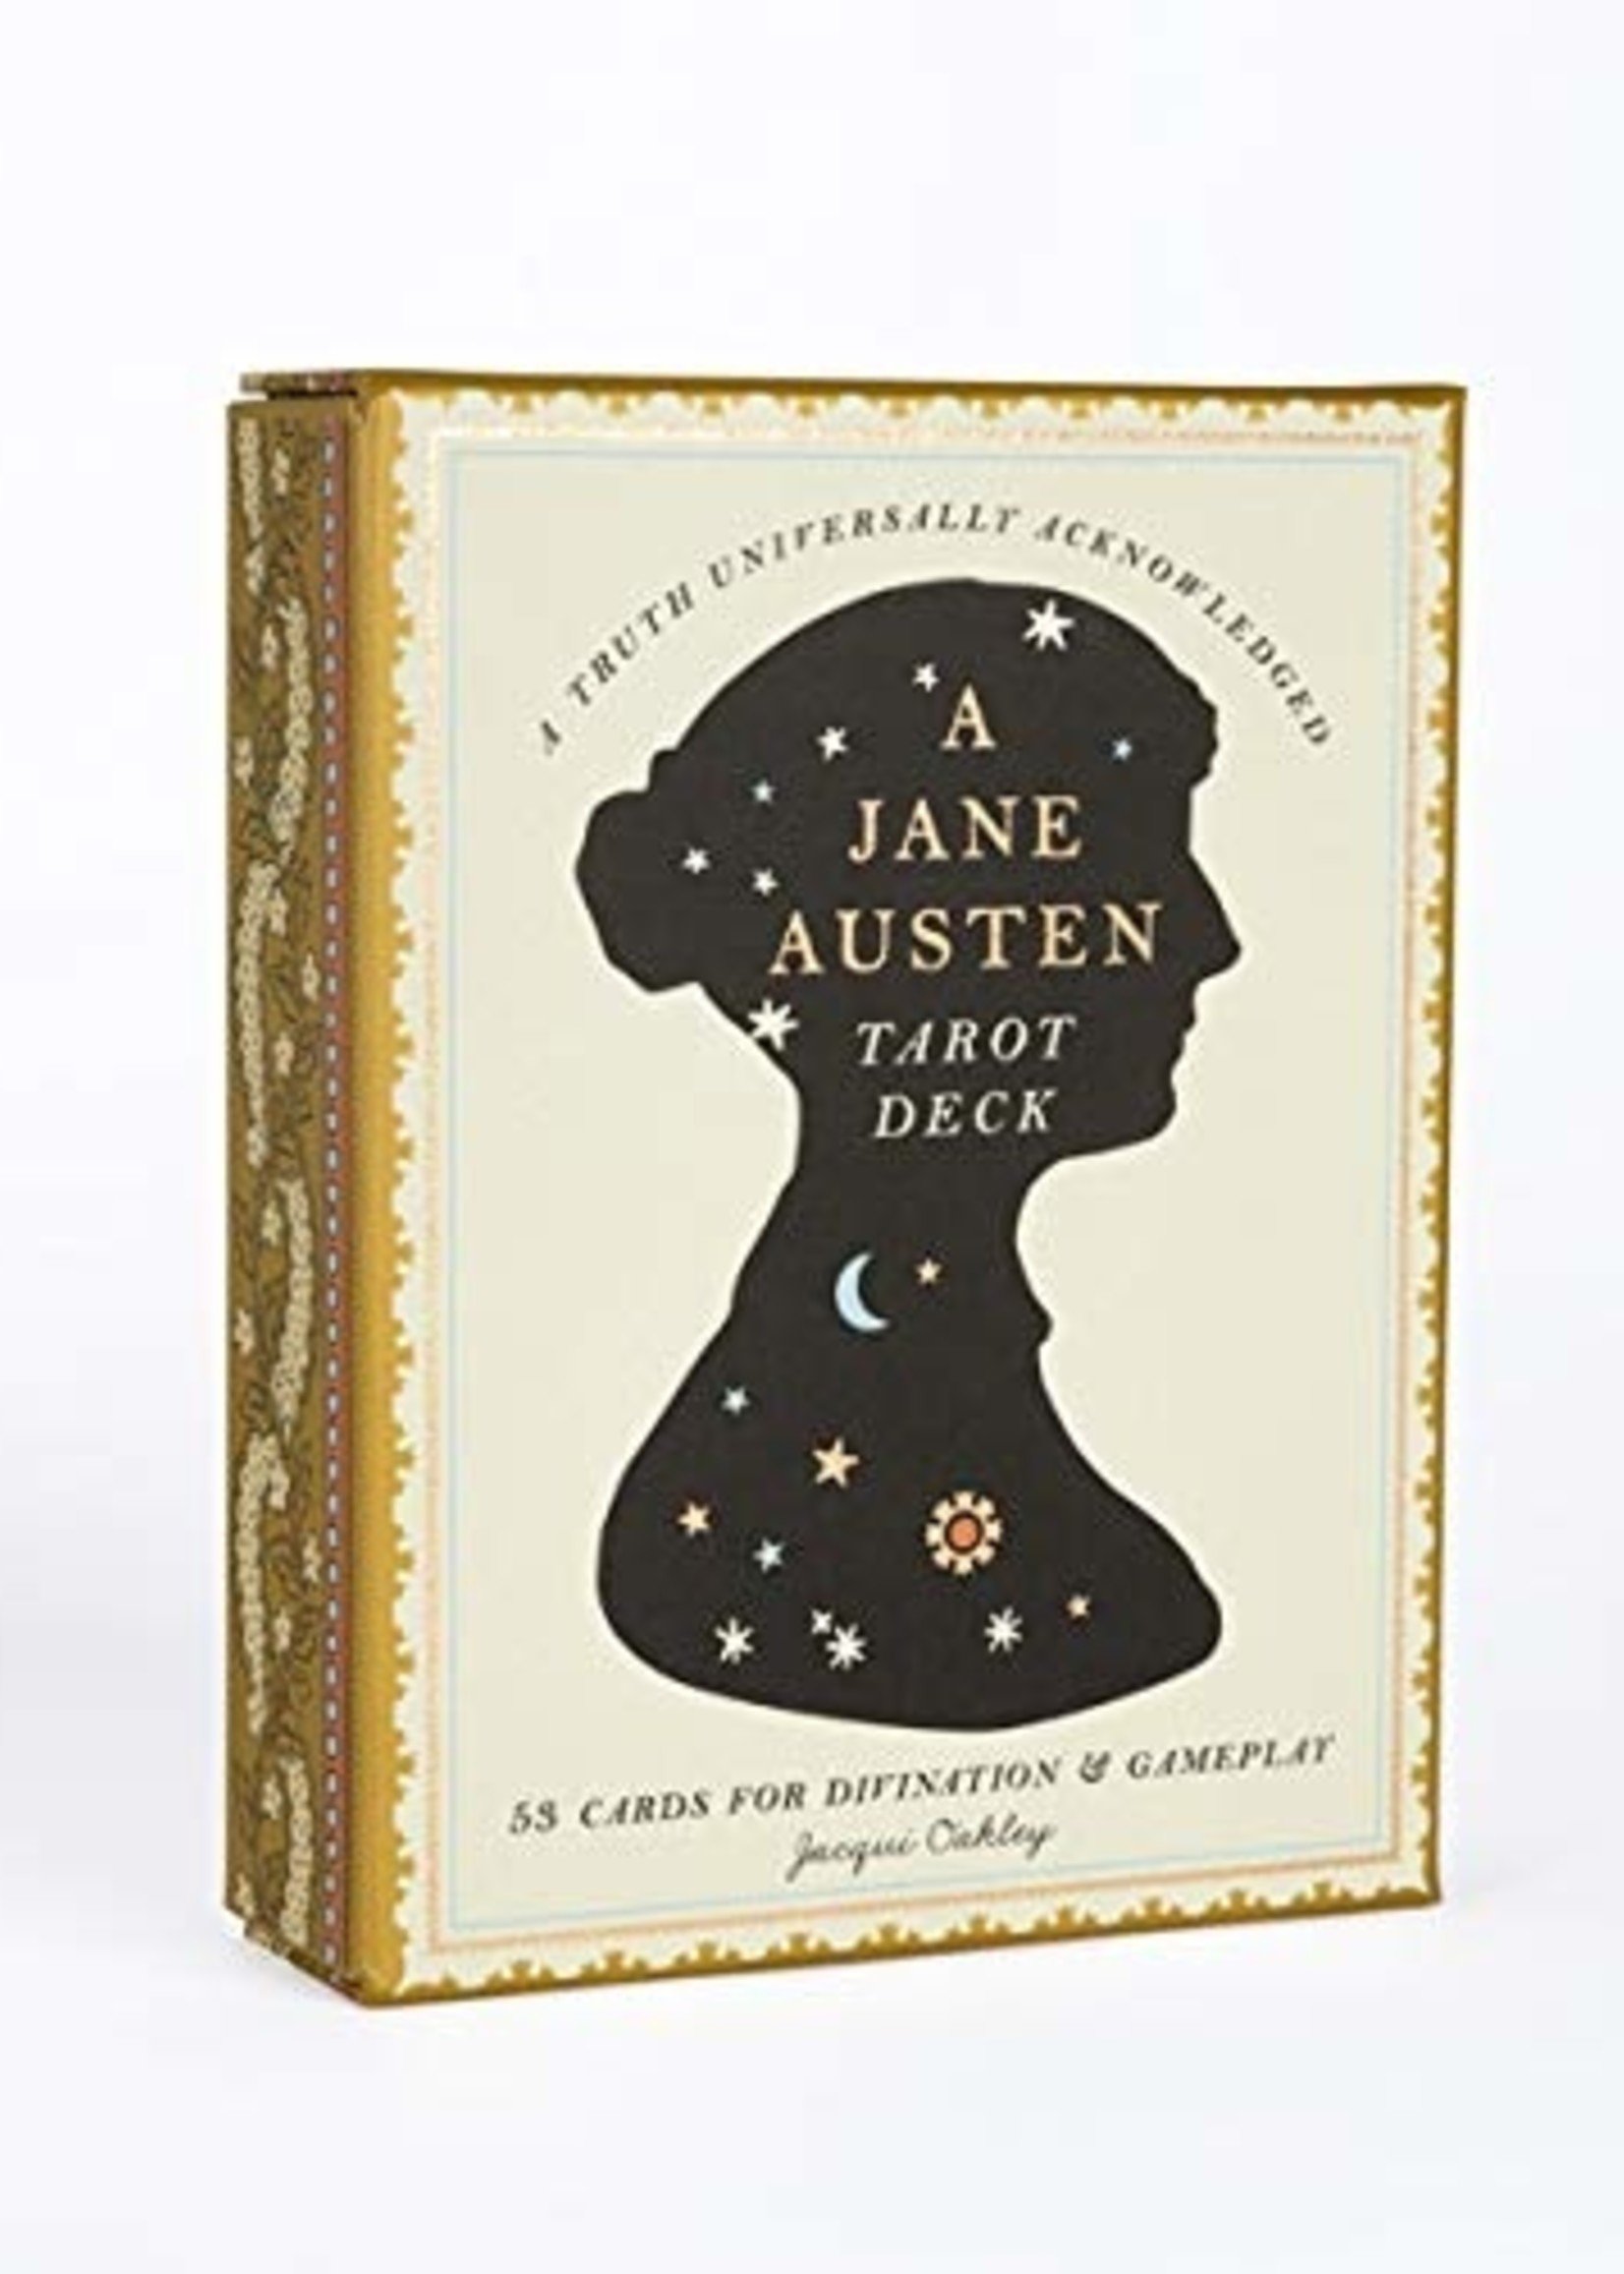 DECK A Jane Austen Tarot Deck